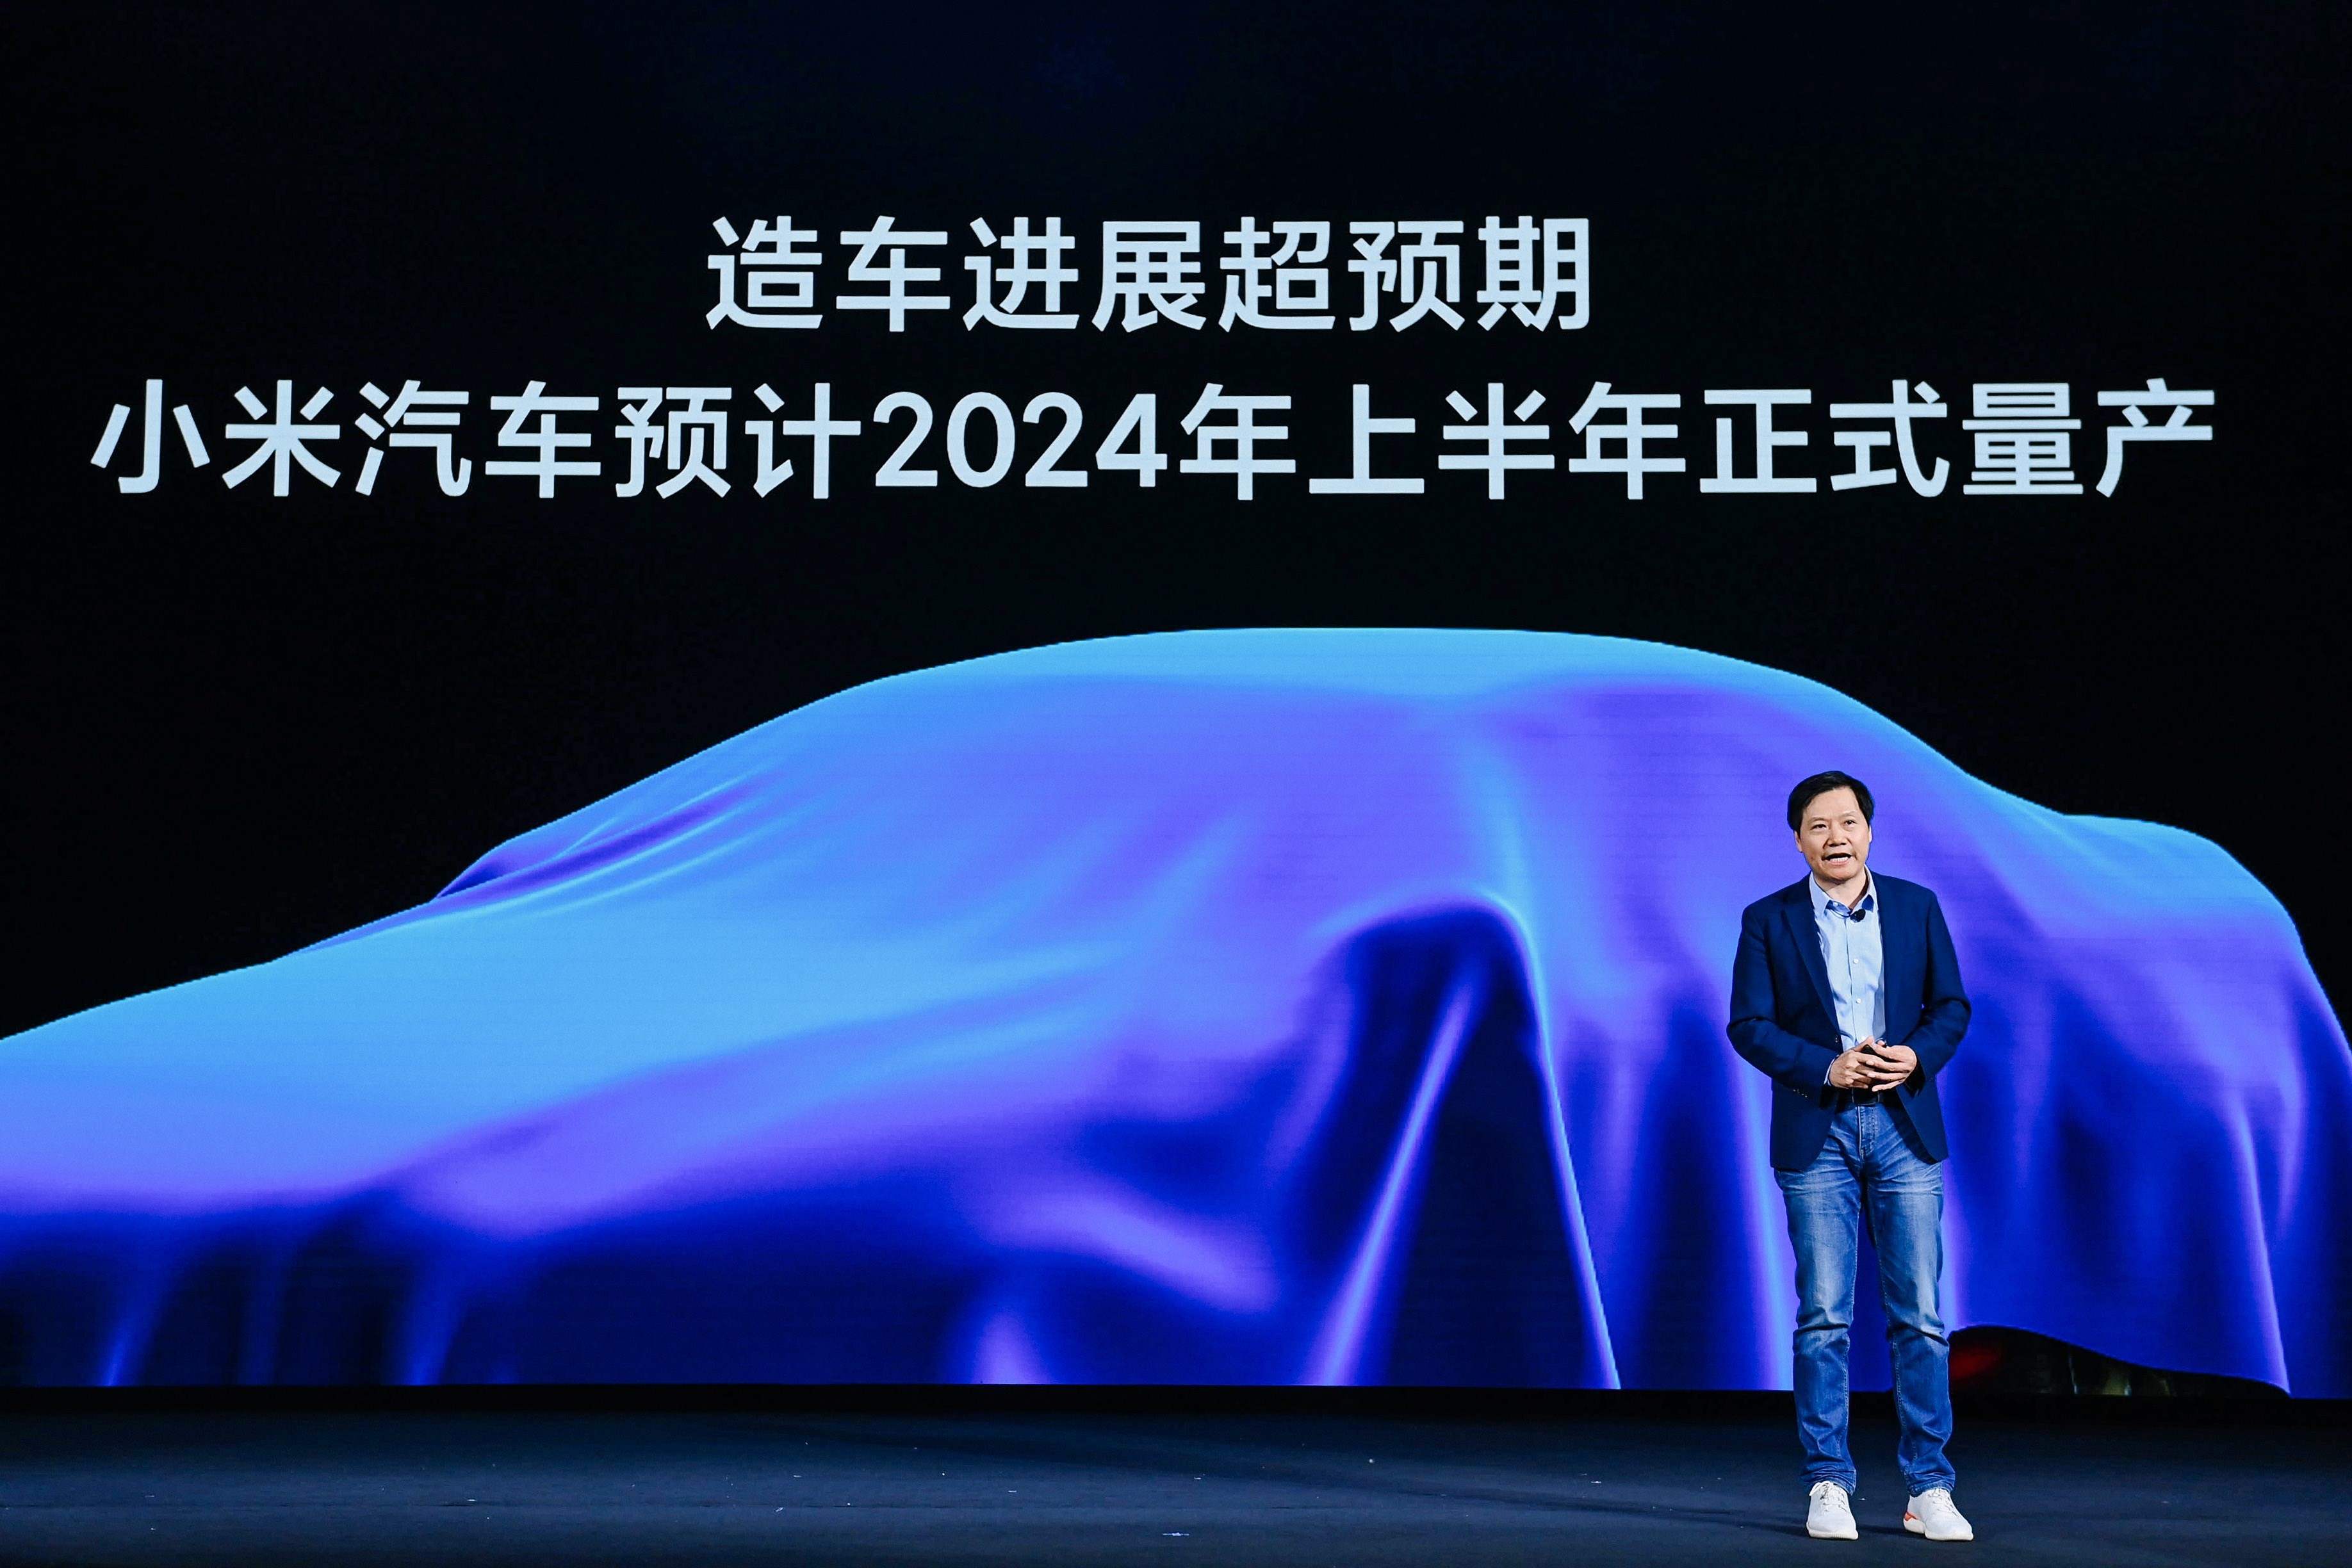 Xiaomi ilk otomobilinin fiyatını belirledi: 2024'te geliyor